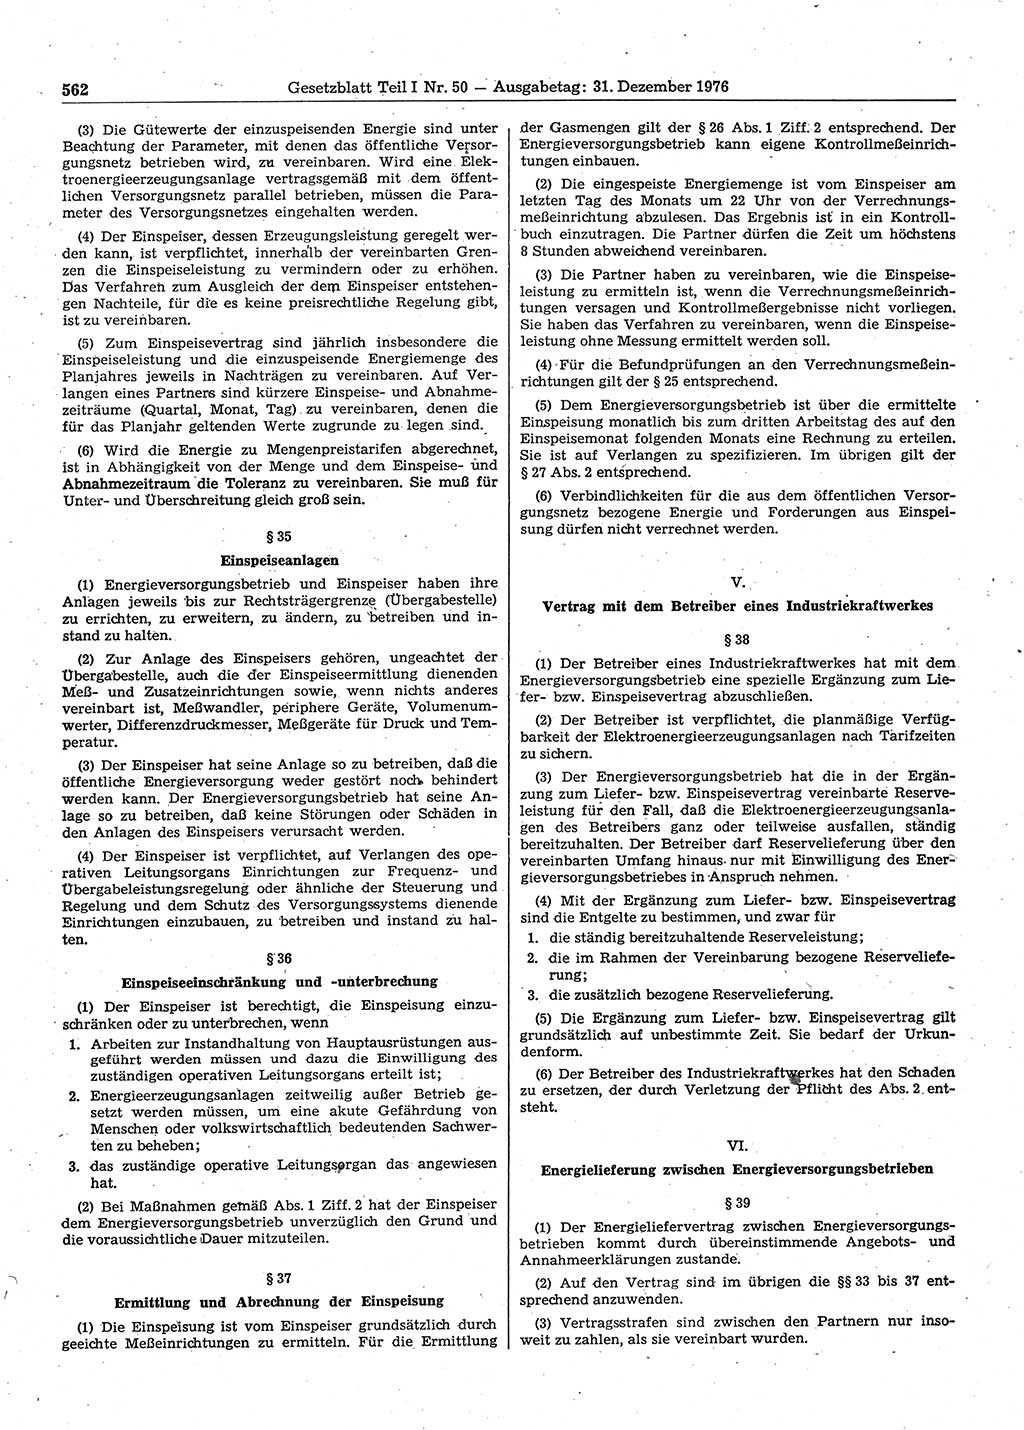 Gesetzblatt (GBl.) der Deutschen Demokratischen Republik (DDR) Teil Ⅰ 1976, Seite 562 (GBl. DDR Ⅰ 1976, S. 562)